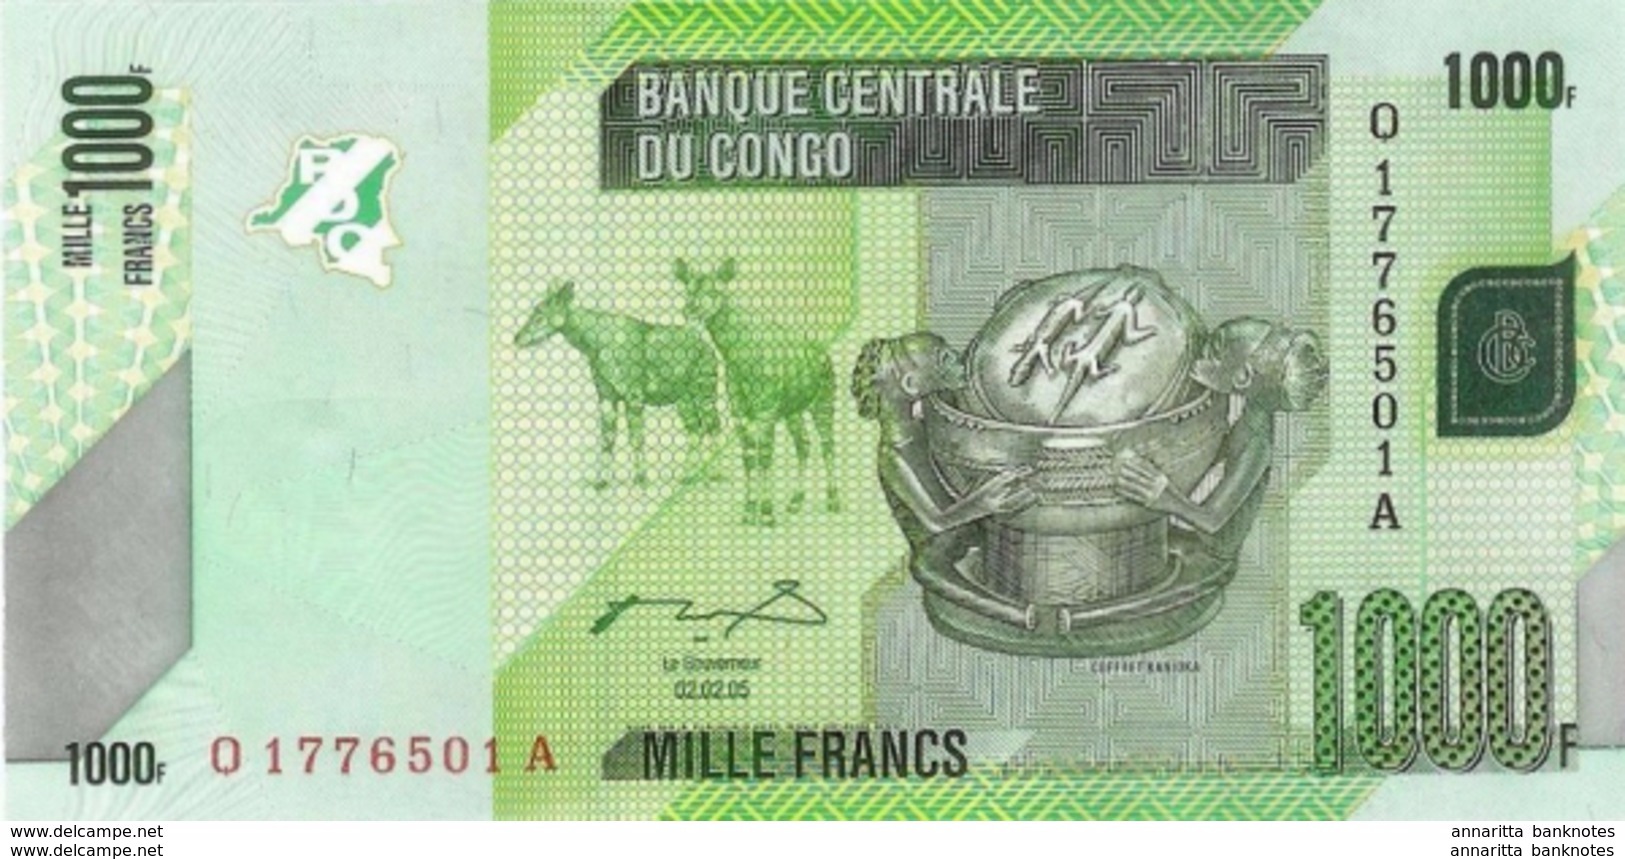 CONGO DEMOCRATIC REPUBLIC 1000 FRANCS 2005 (2012) P-101a UNC [ CD323a ] - Democratic Republic Of The Congo & Zaire